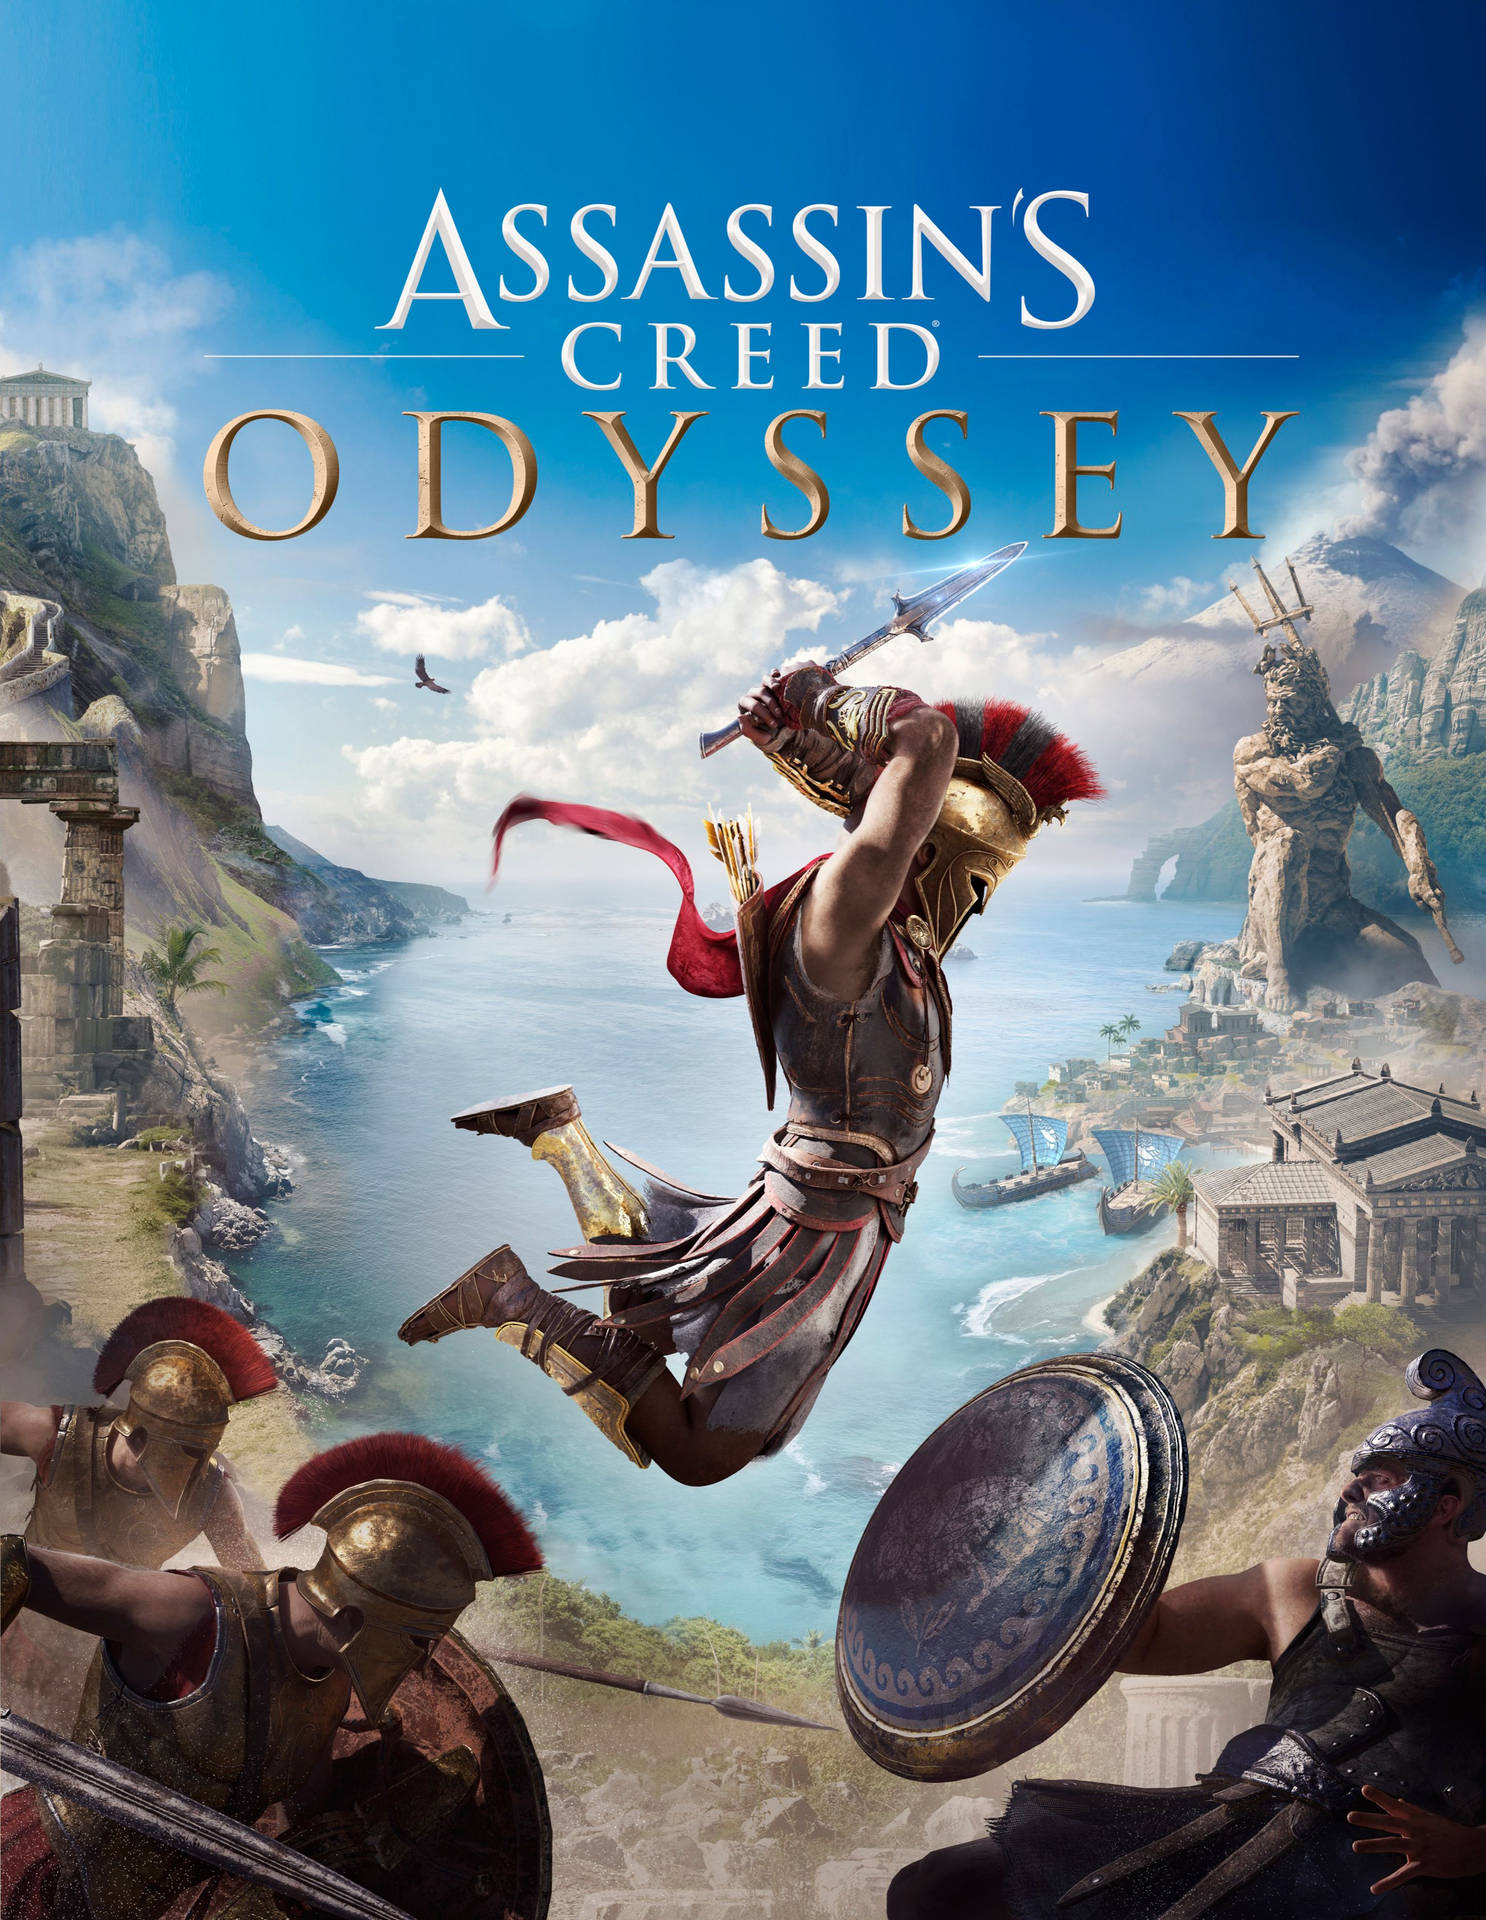 Immagini Di Assassin's Creed Odyssey